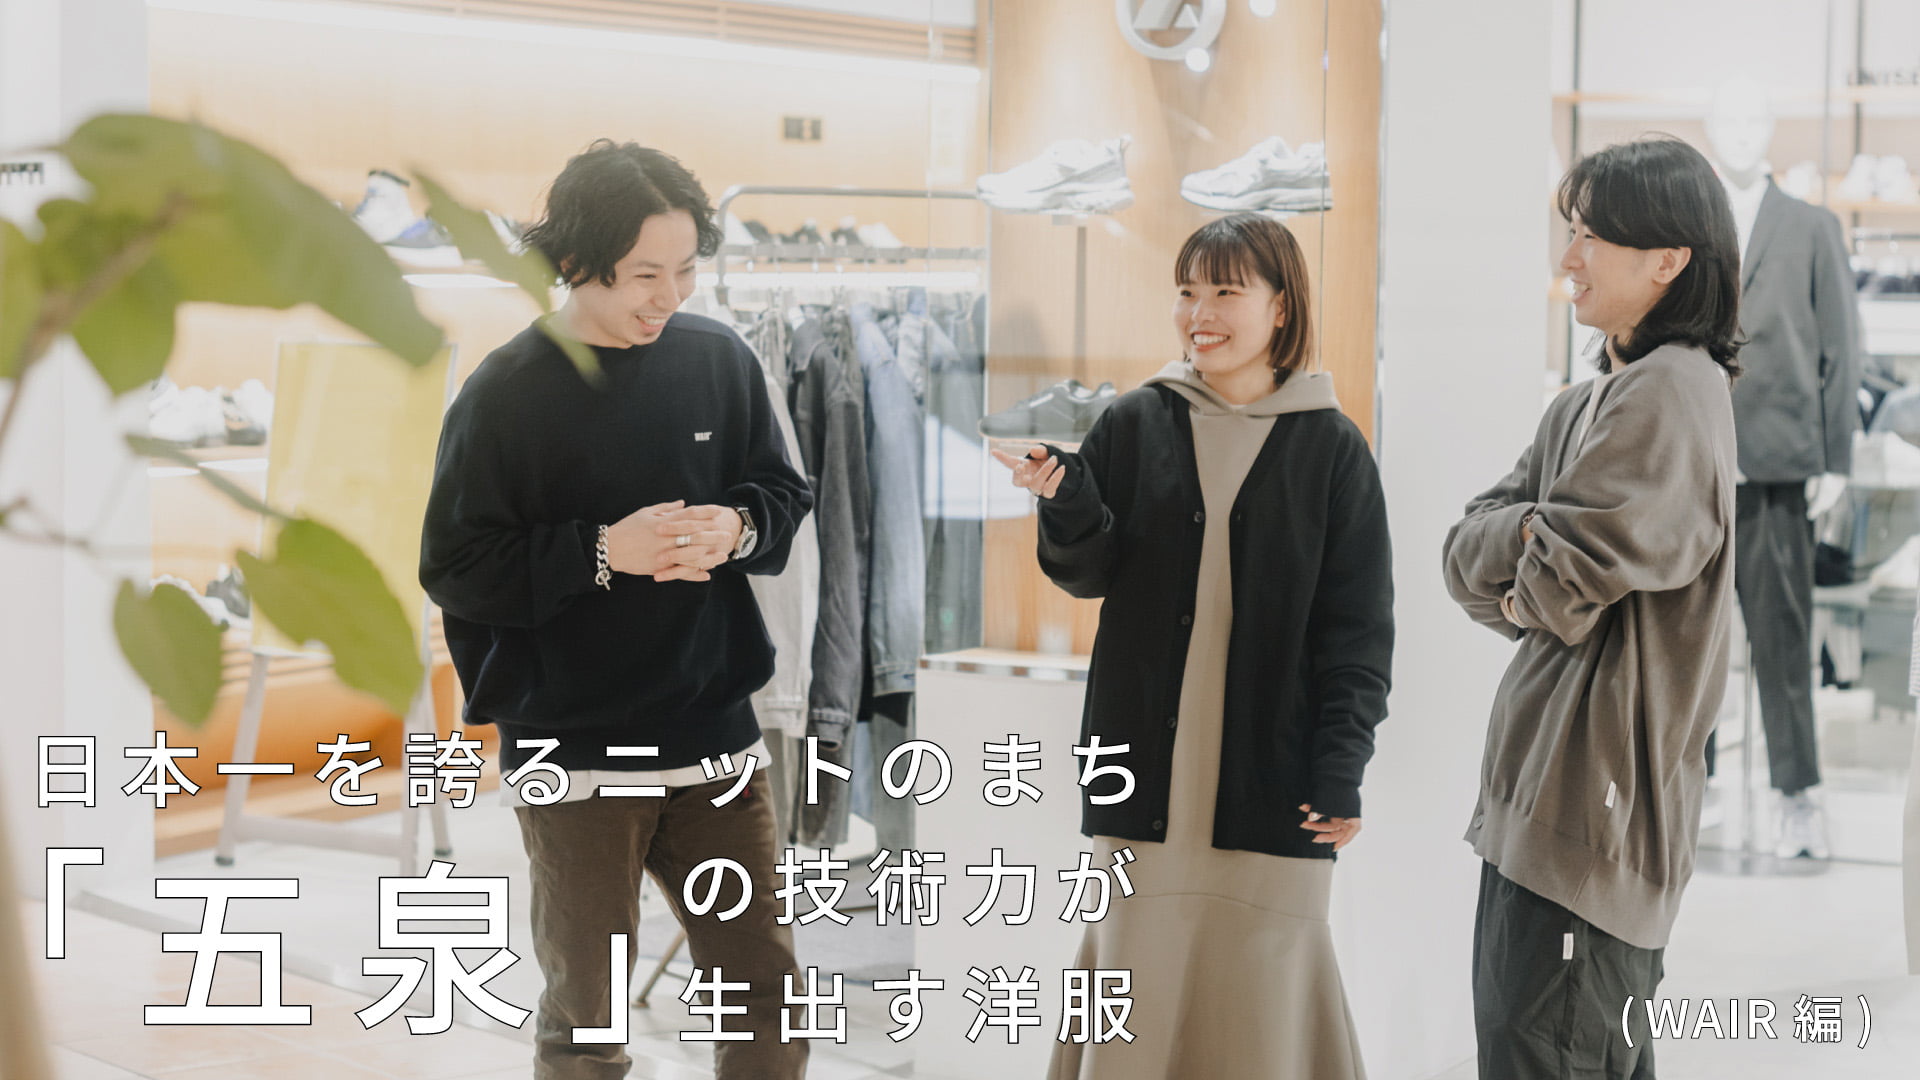 日本一を誇るニットのまち「五泉」の技術力が生み出す洋服 (WAIR編)